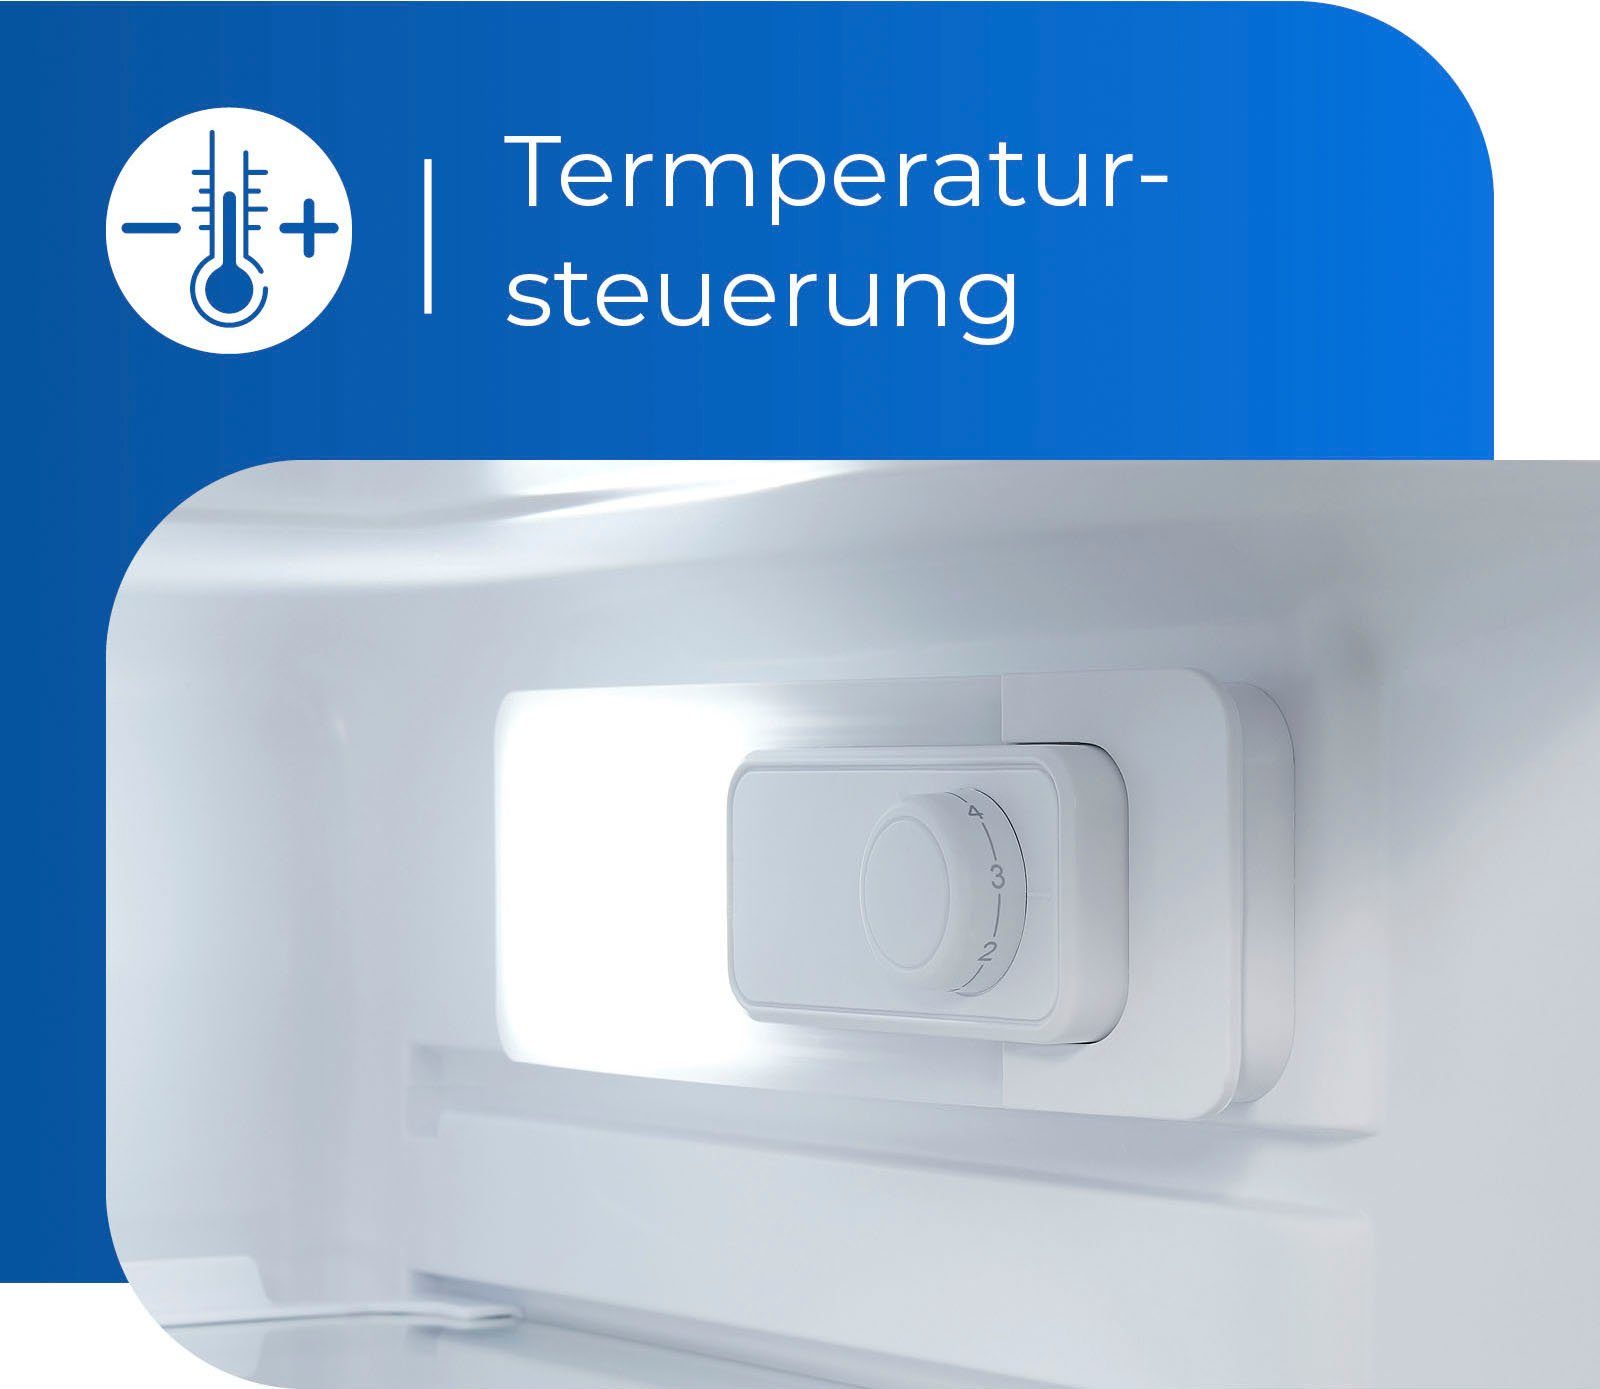 exquisit Kühlschrank KS16-V-H-040E breit hoch, 85,5 55 cm cm inoxlook